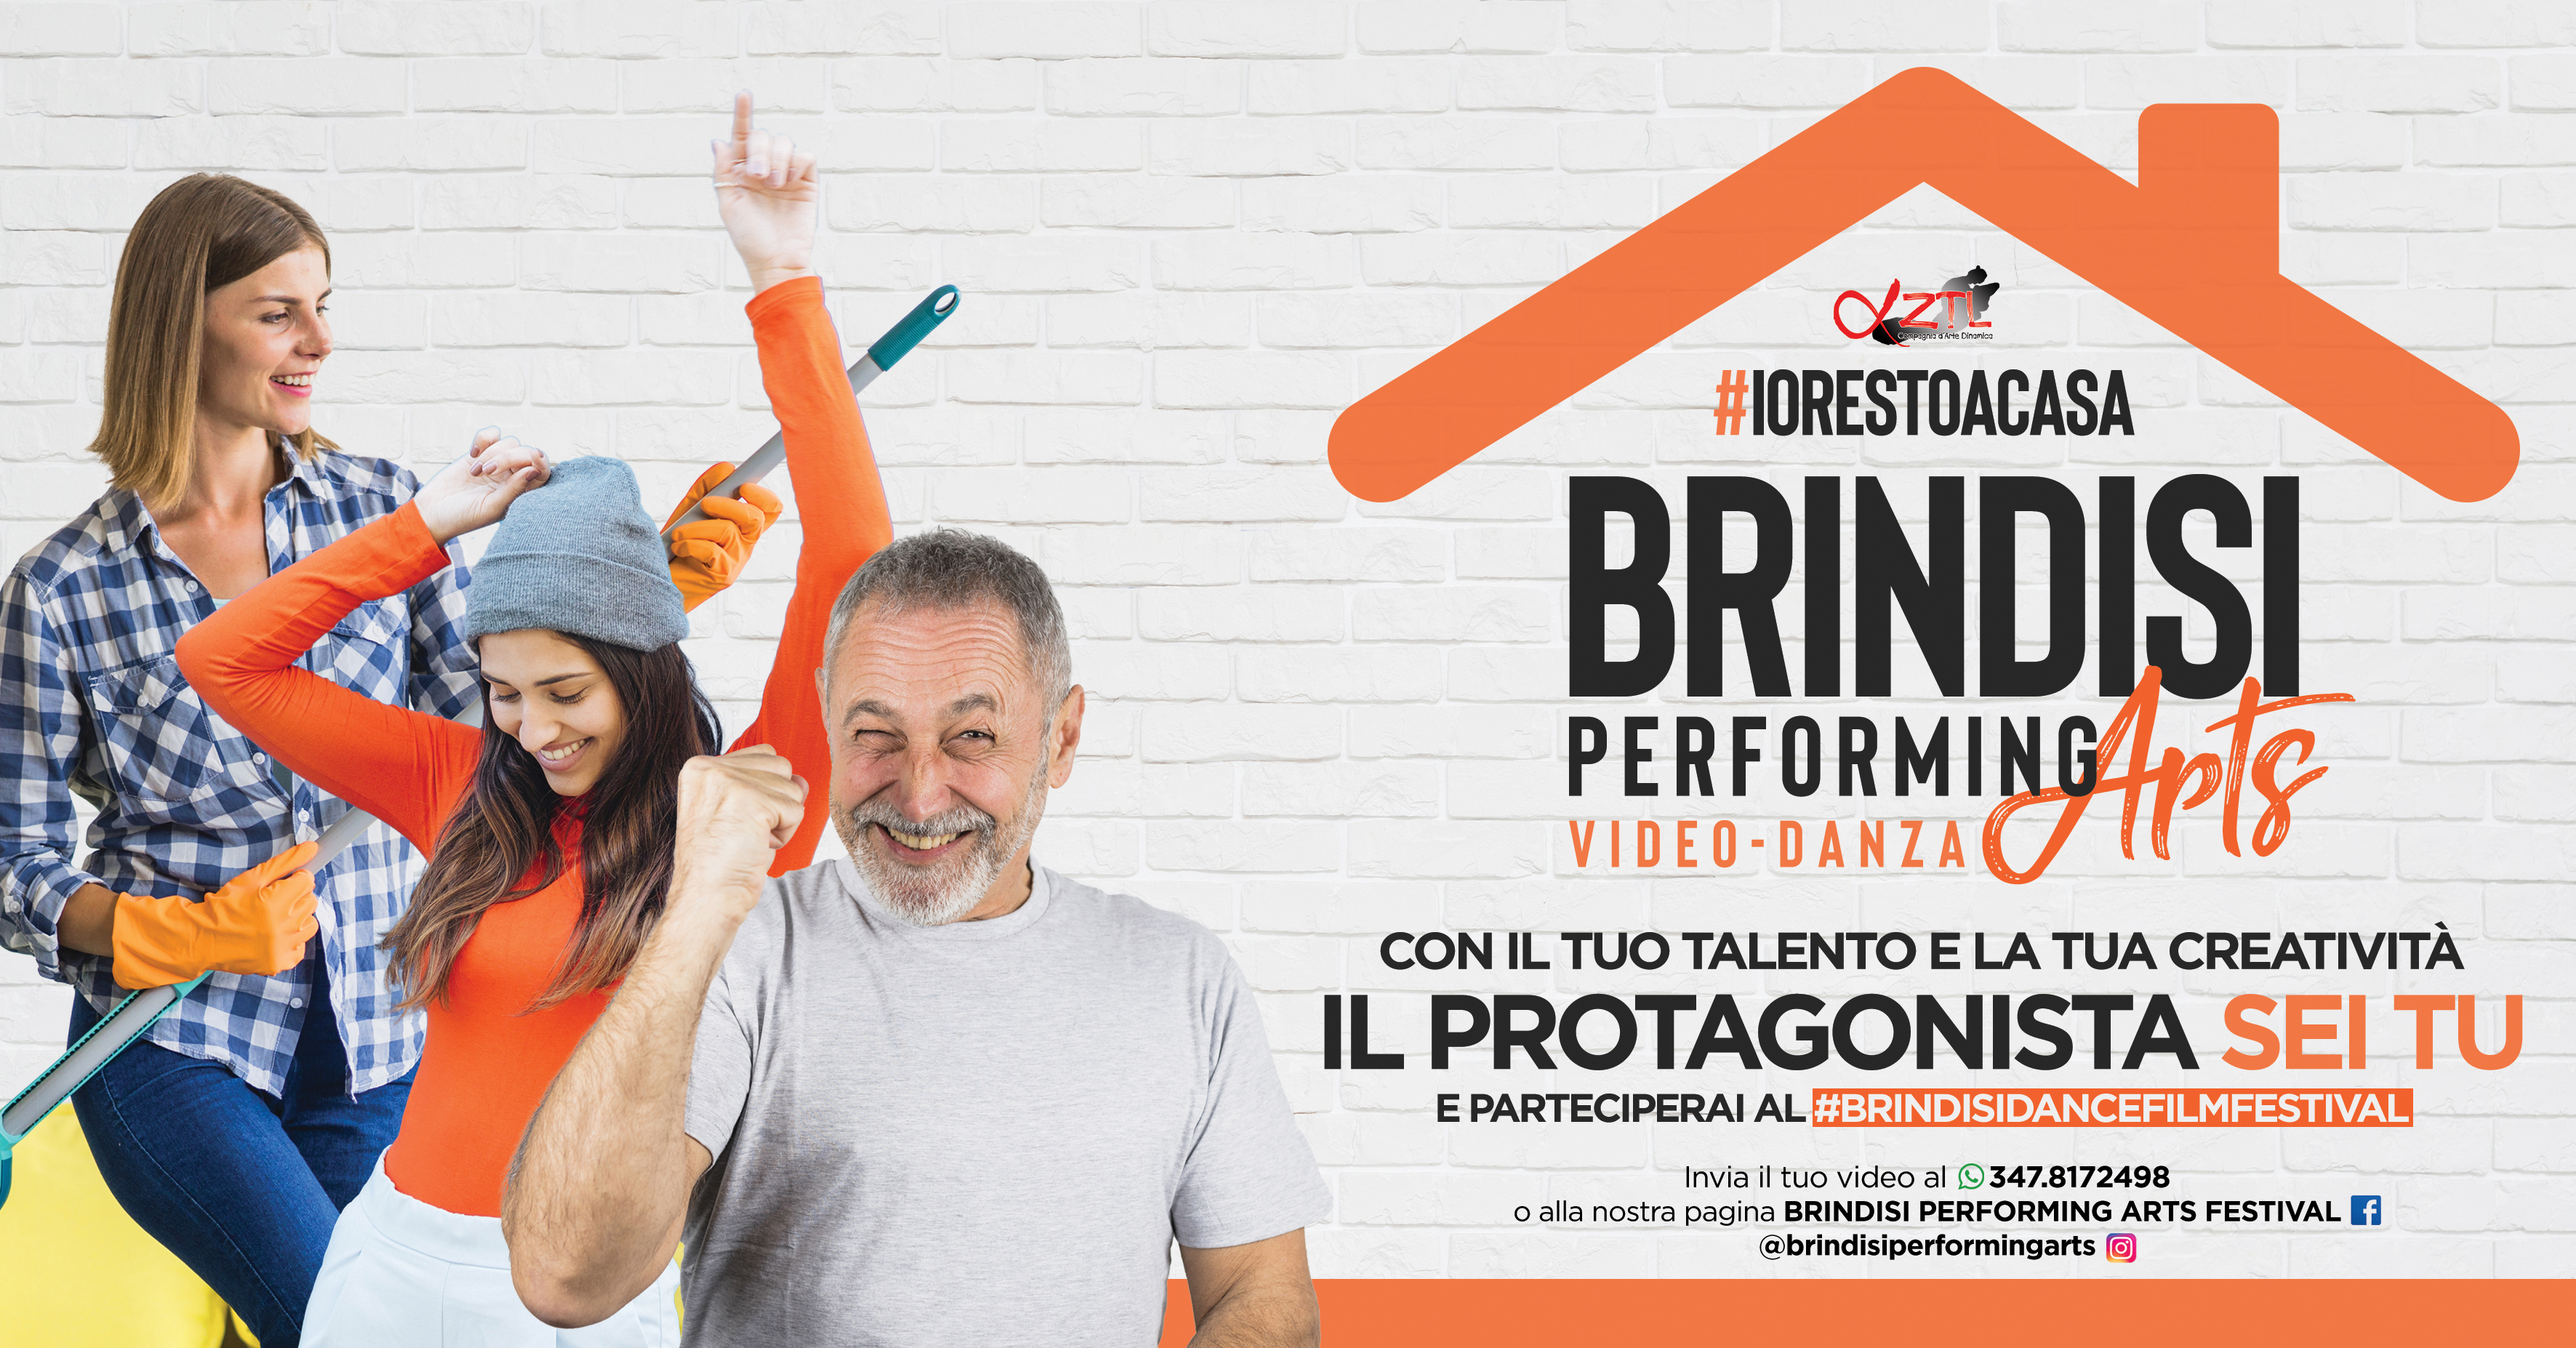 Brindisi Performing Arts: il protagonista sei tu